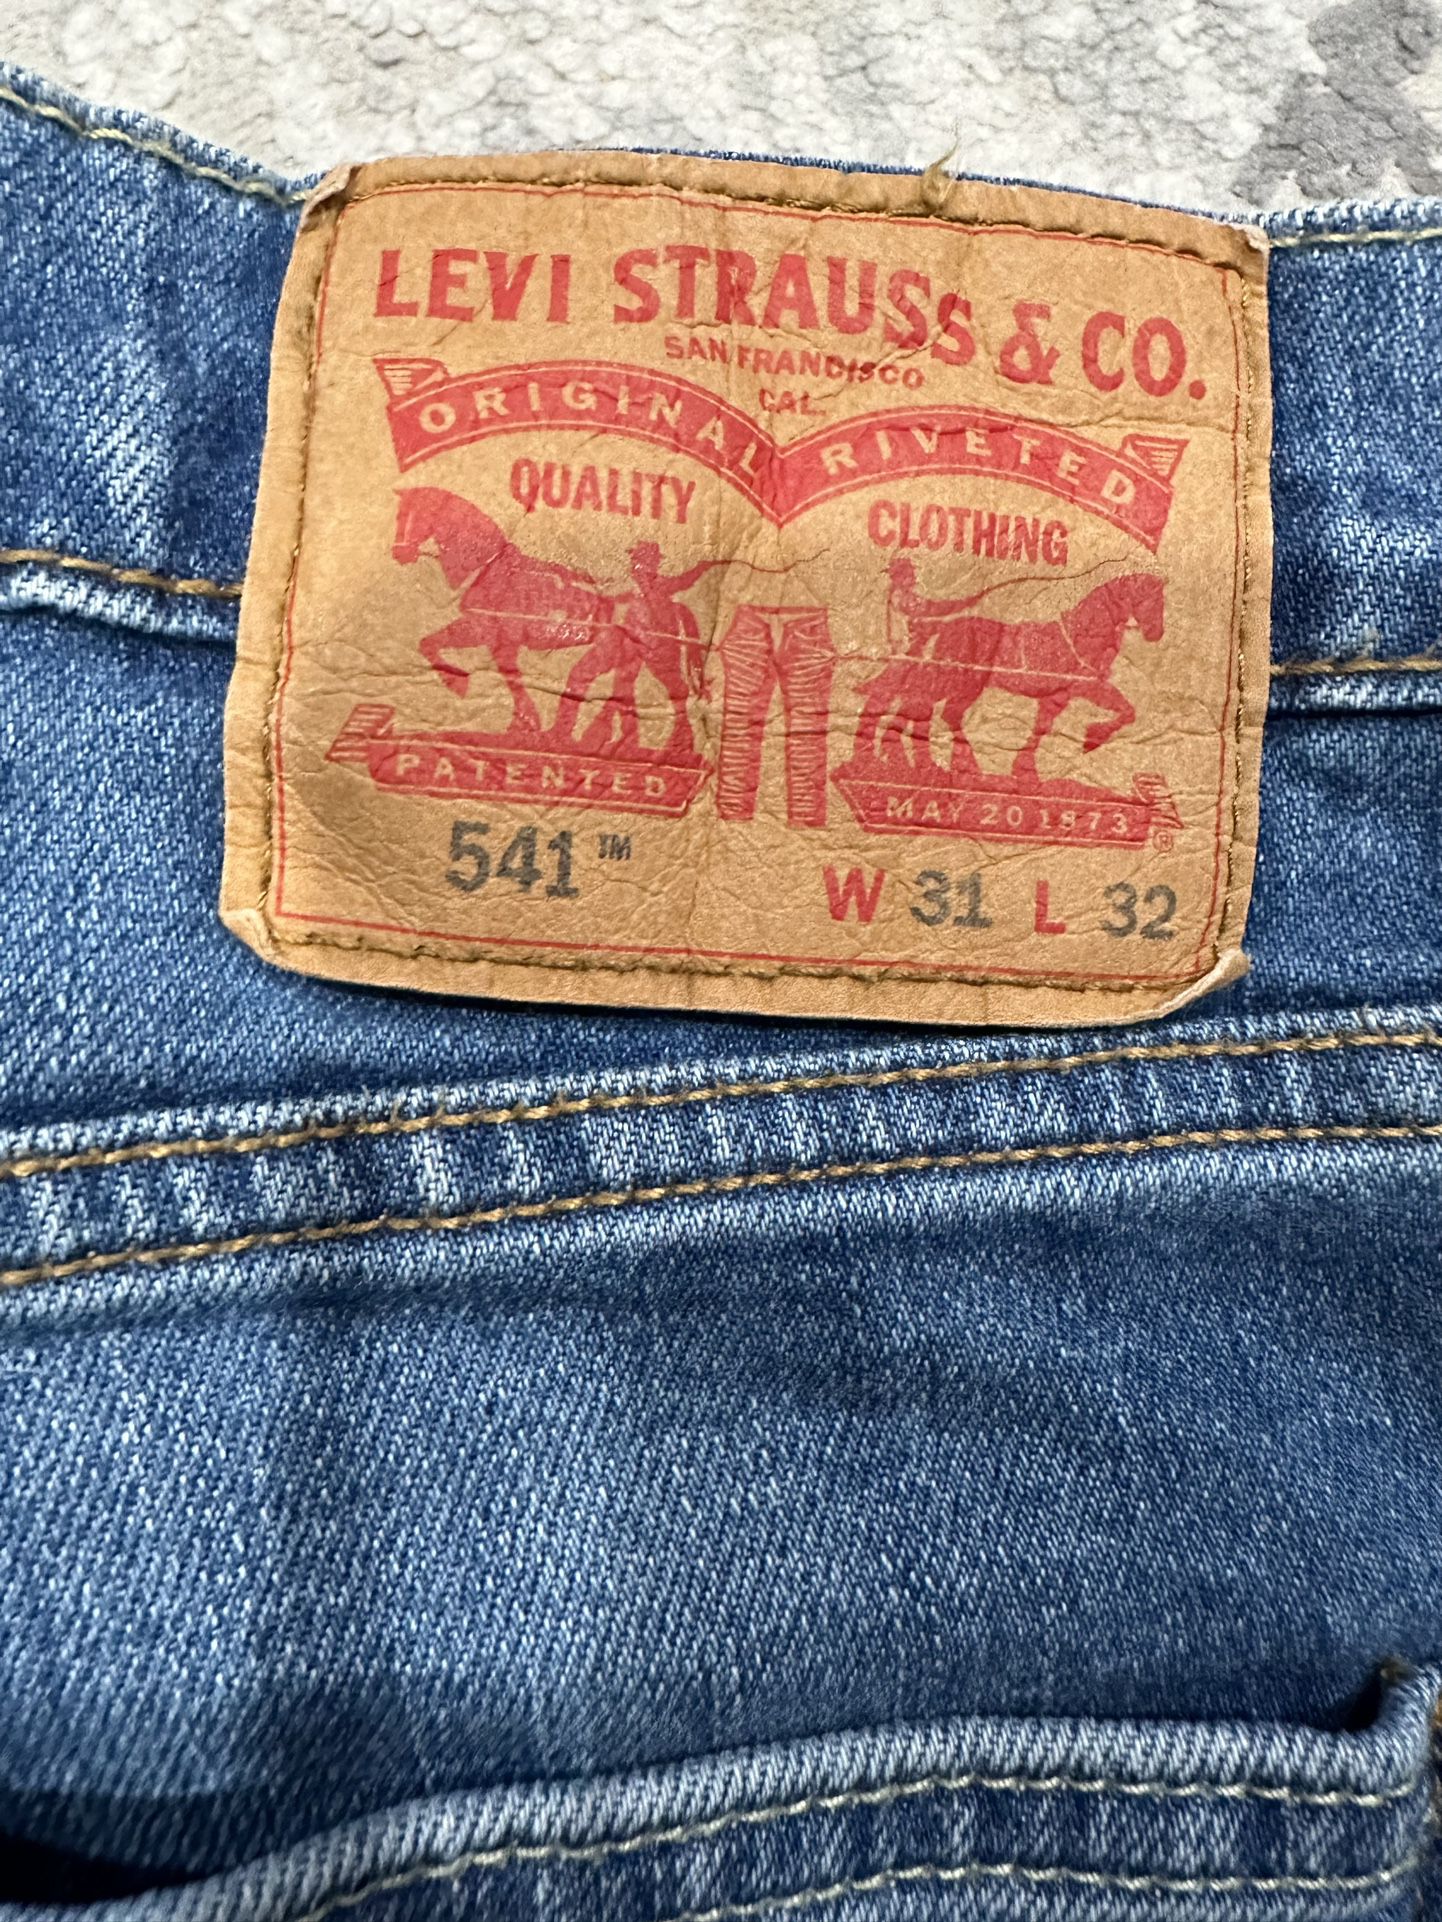 Levi strauss & co Men’s pants W31 L32